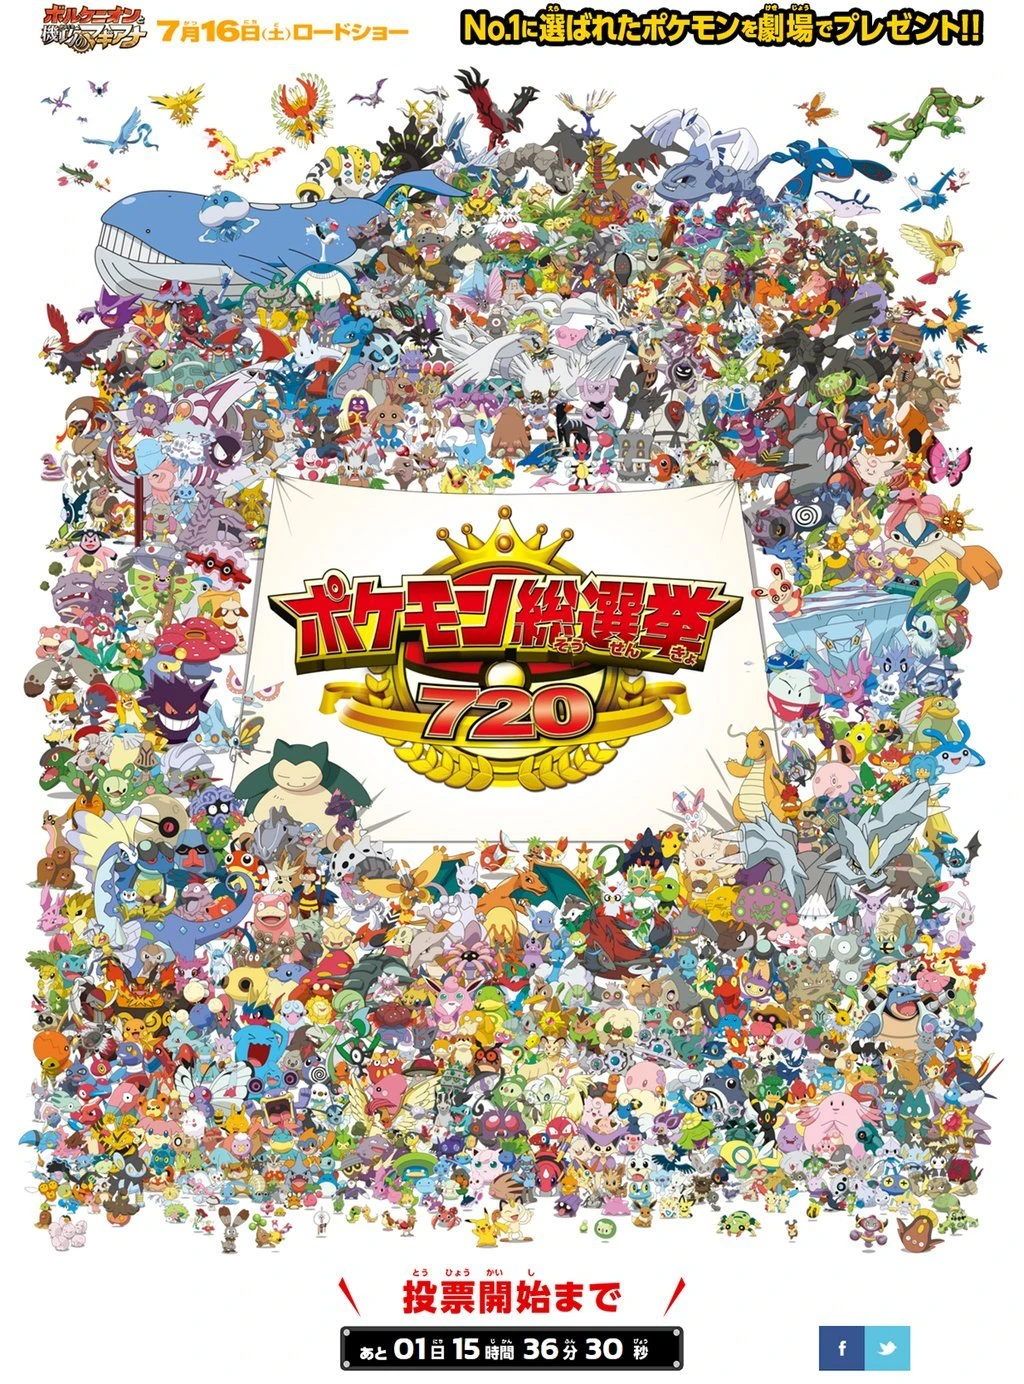 「ポケモン総選挙720」／ポケモン・ザ・ムービーXY&Z 公式Twitter（<a href="https://twitter.com/pokemon_movie" target="_blank">@pokemon_movie</a>）より